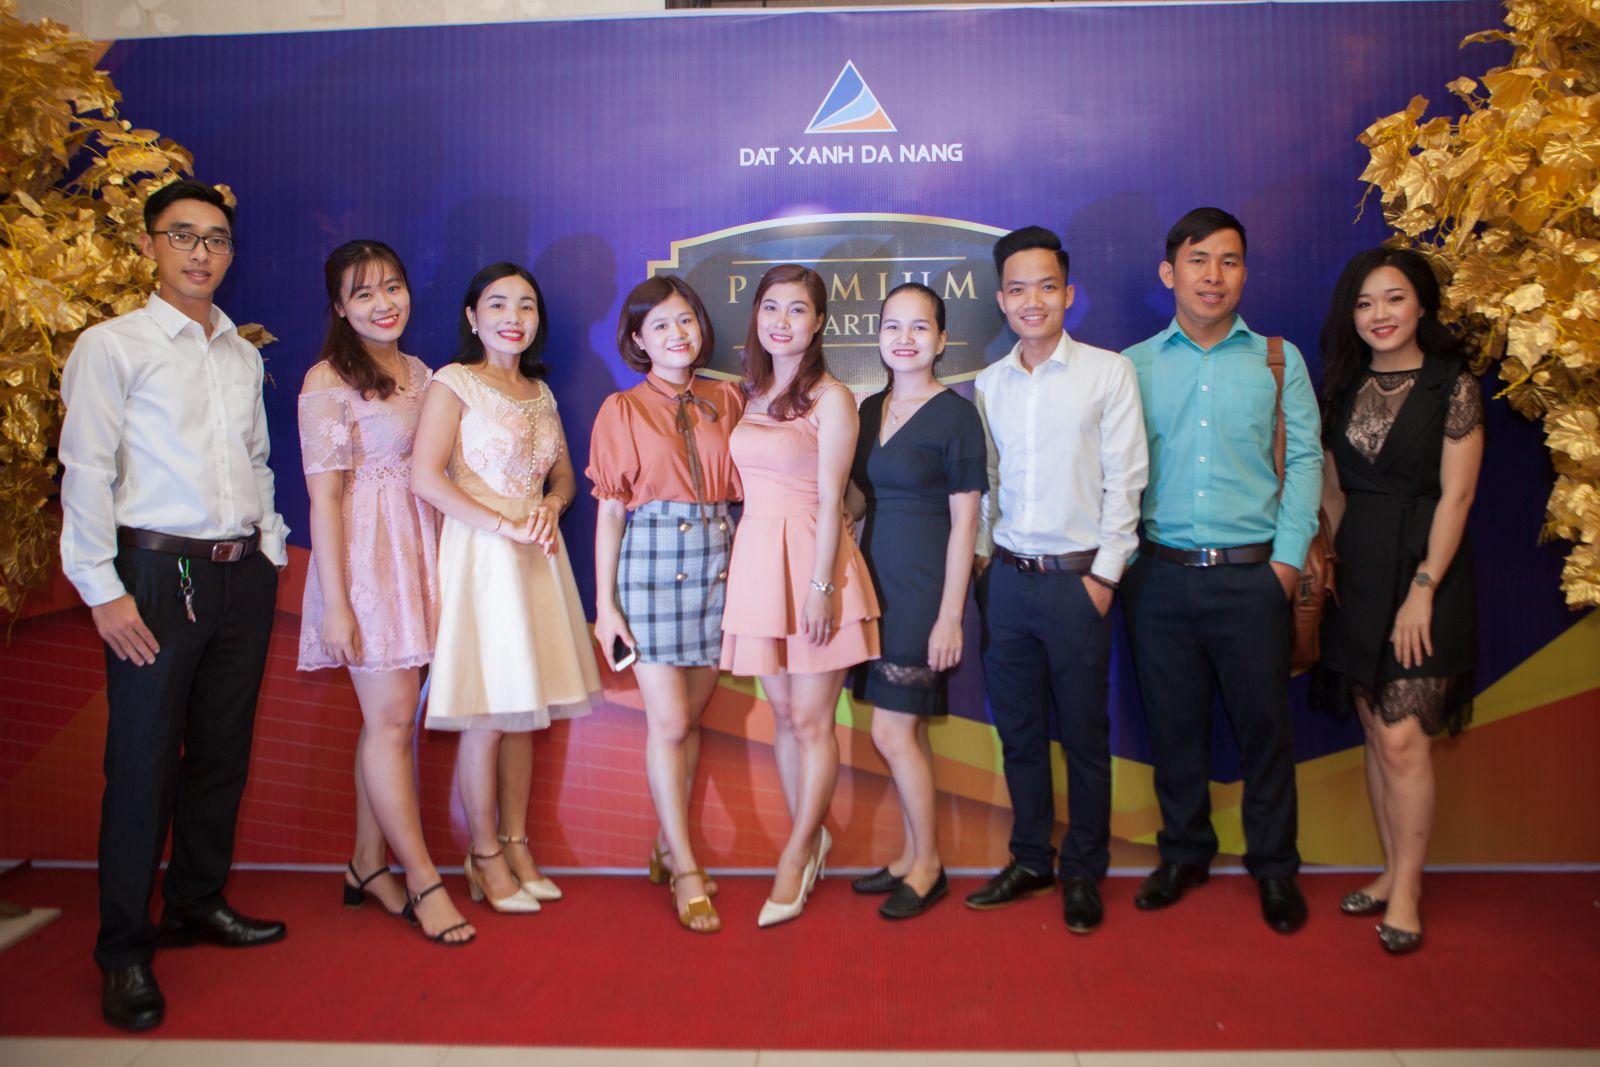 LỄ TỔNG KẾT VÀ VINH DANH QUÝ III/2017 - Viet Nam Smart City